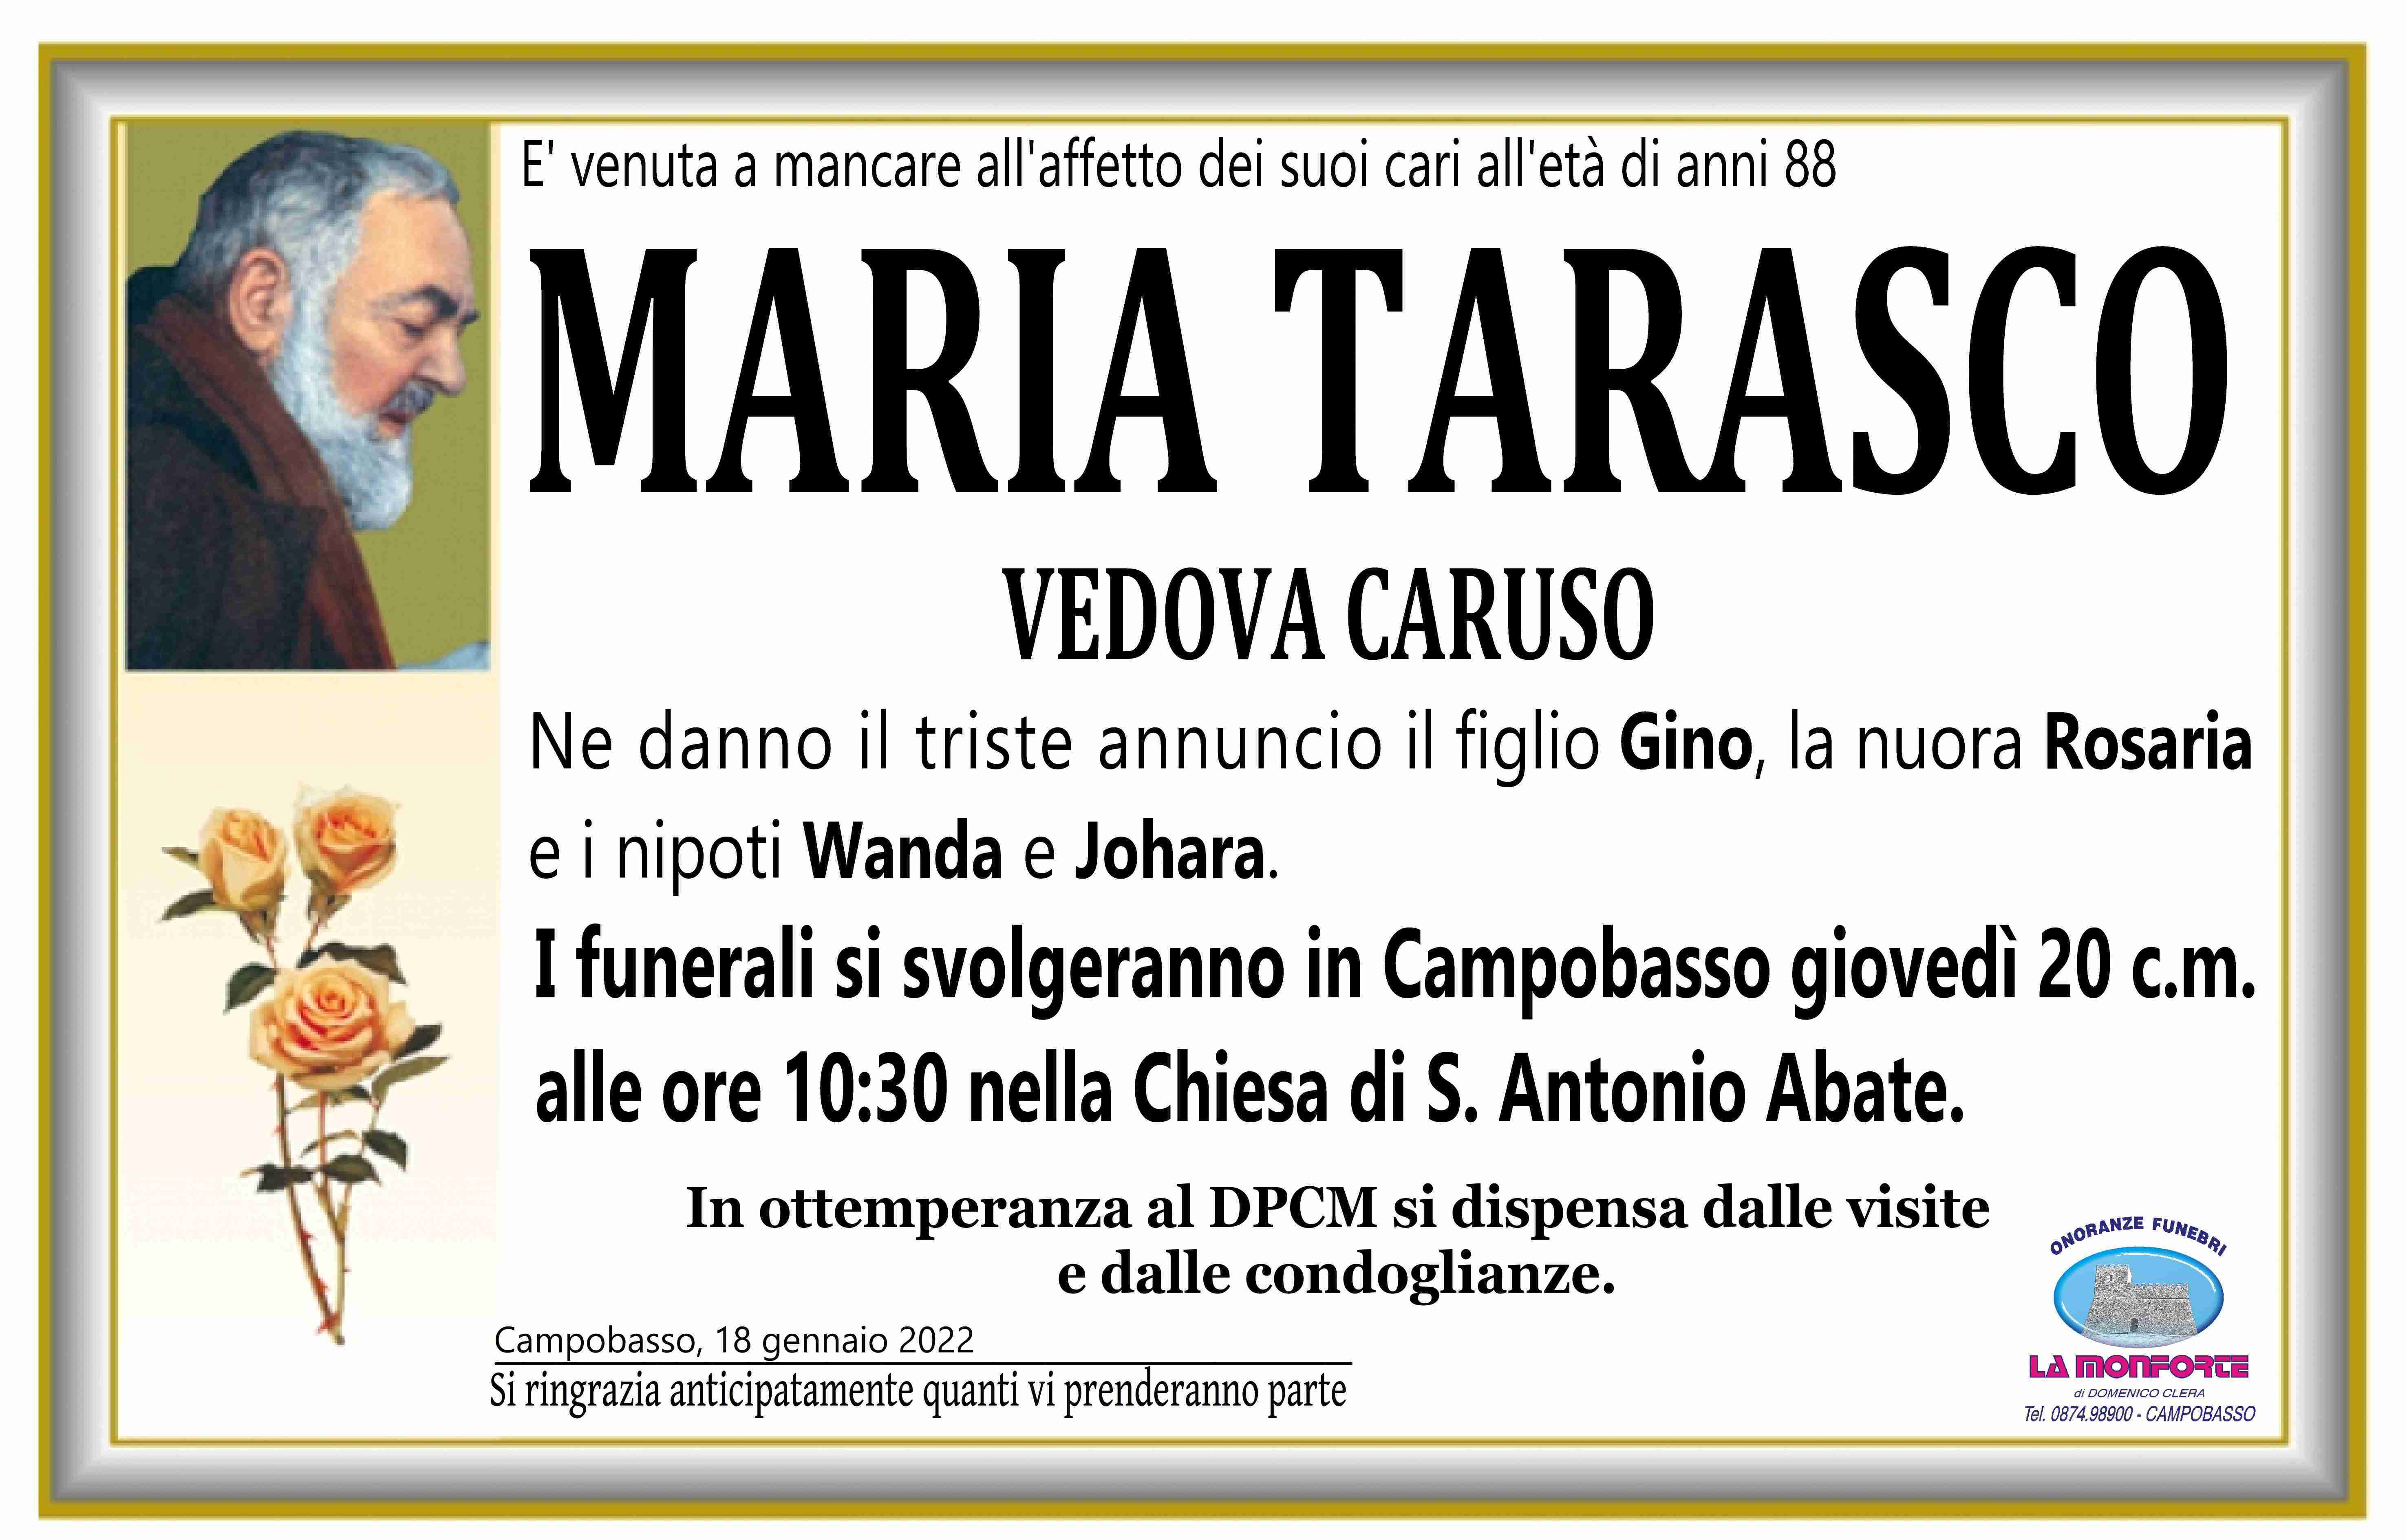 Maria Tarasco